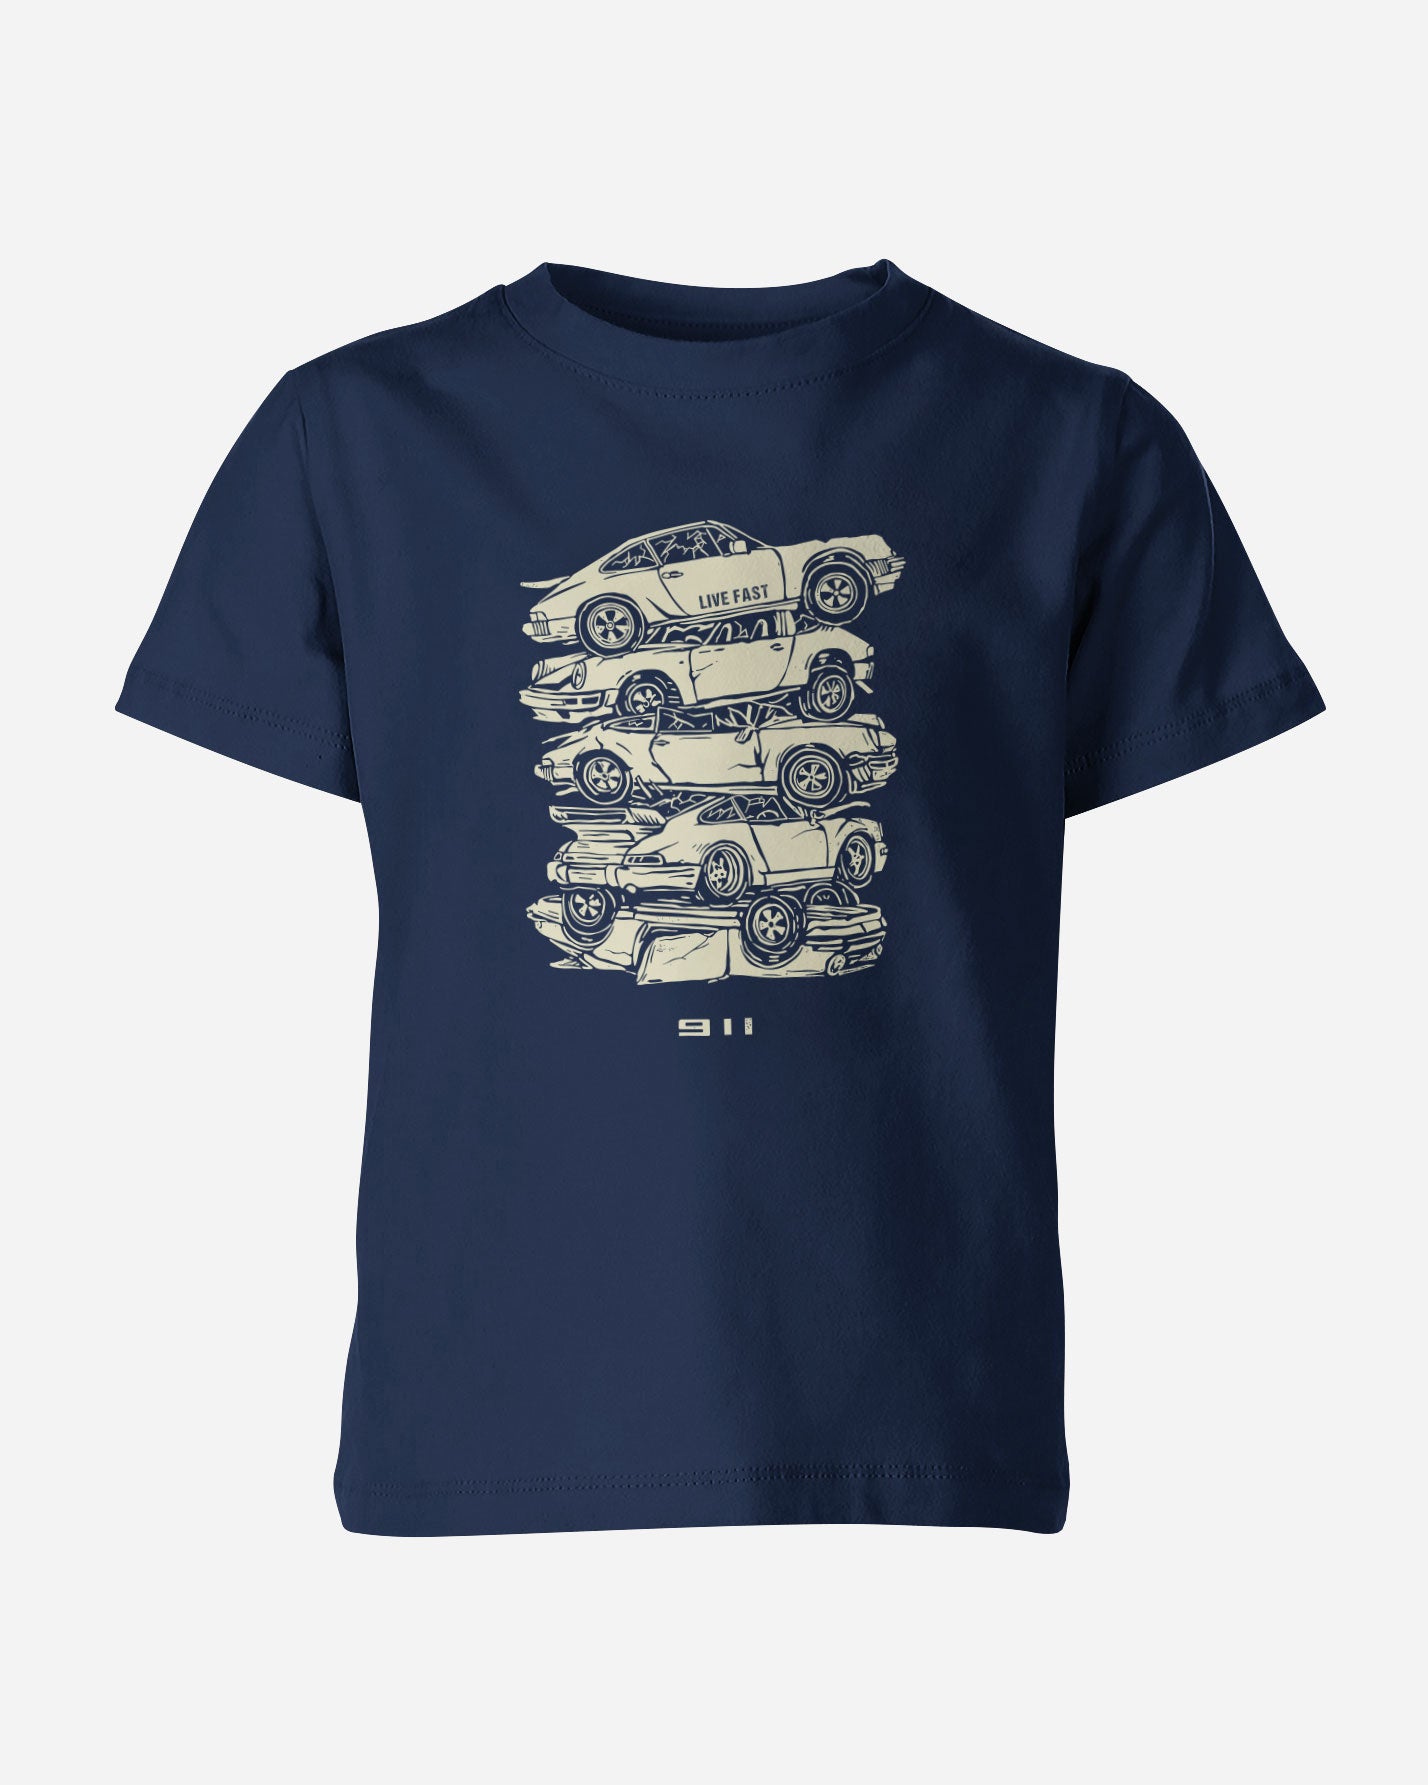 Camiseta Infantil 911 Junk Yard - Live Fast